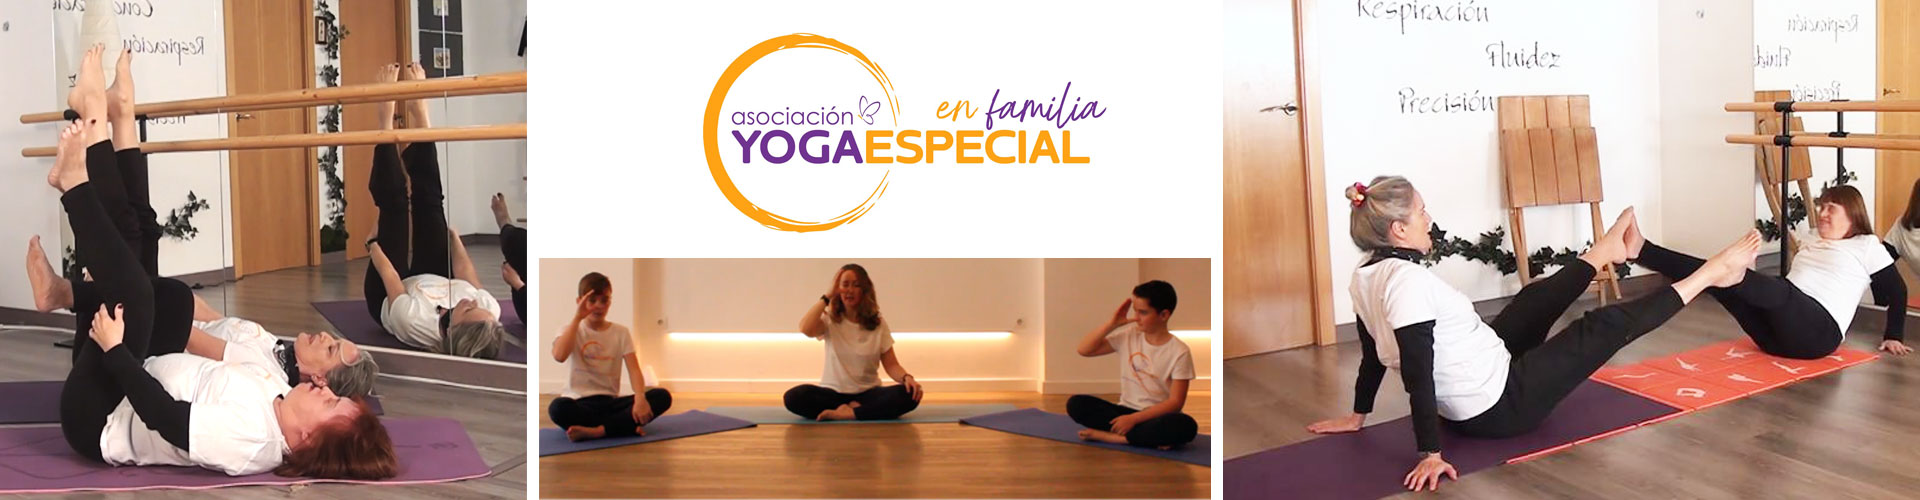 yogaespecial familia